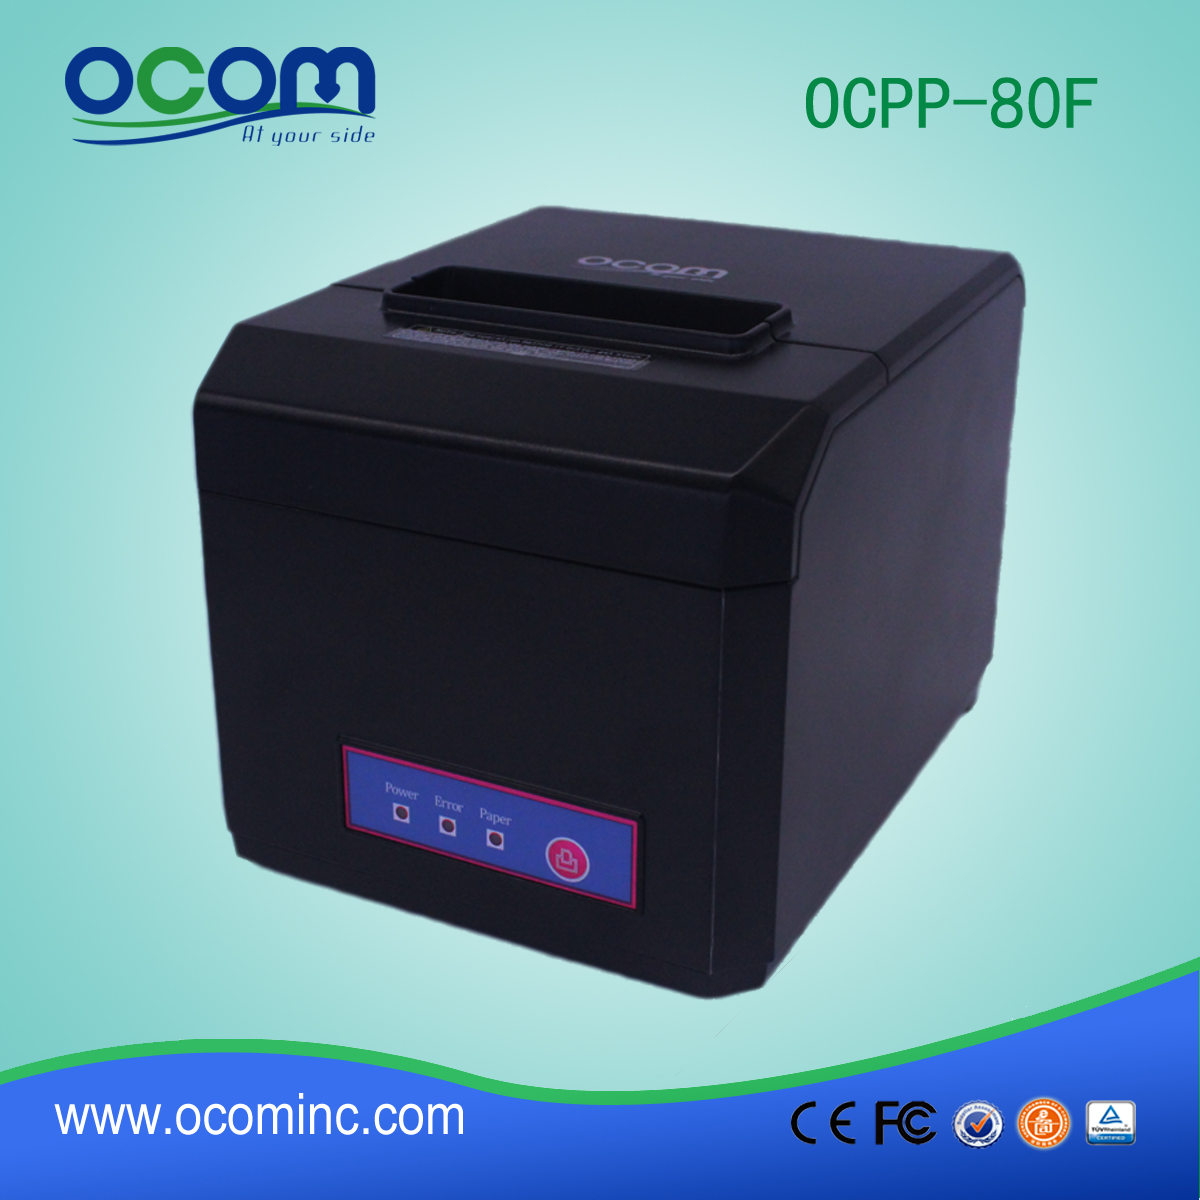 OCPP-80F: China wireless Bluetooth e WiFi pos impressora de recibo térmico